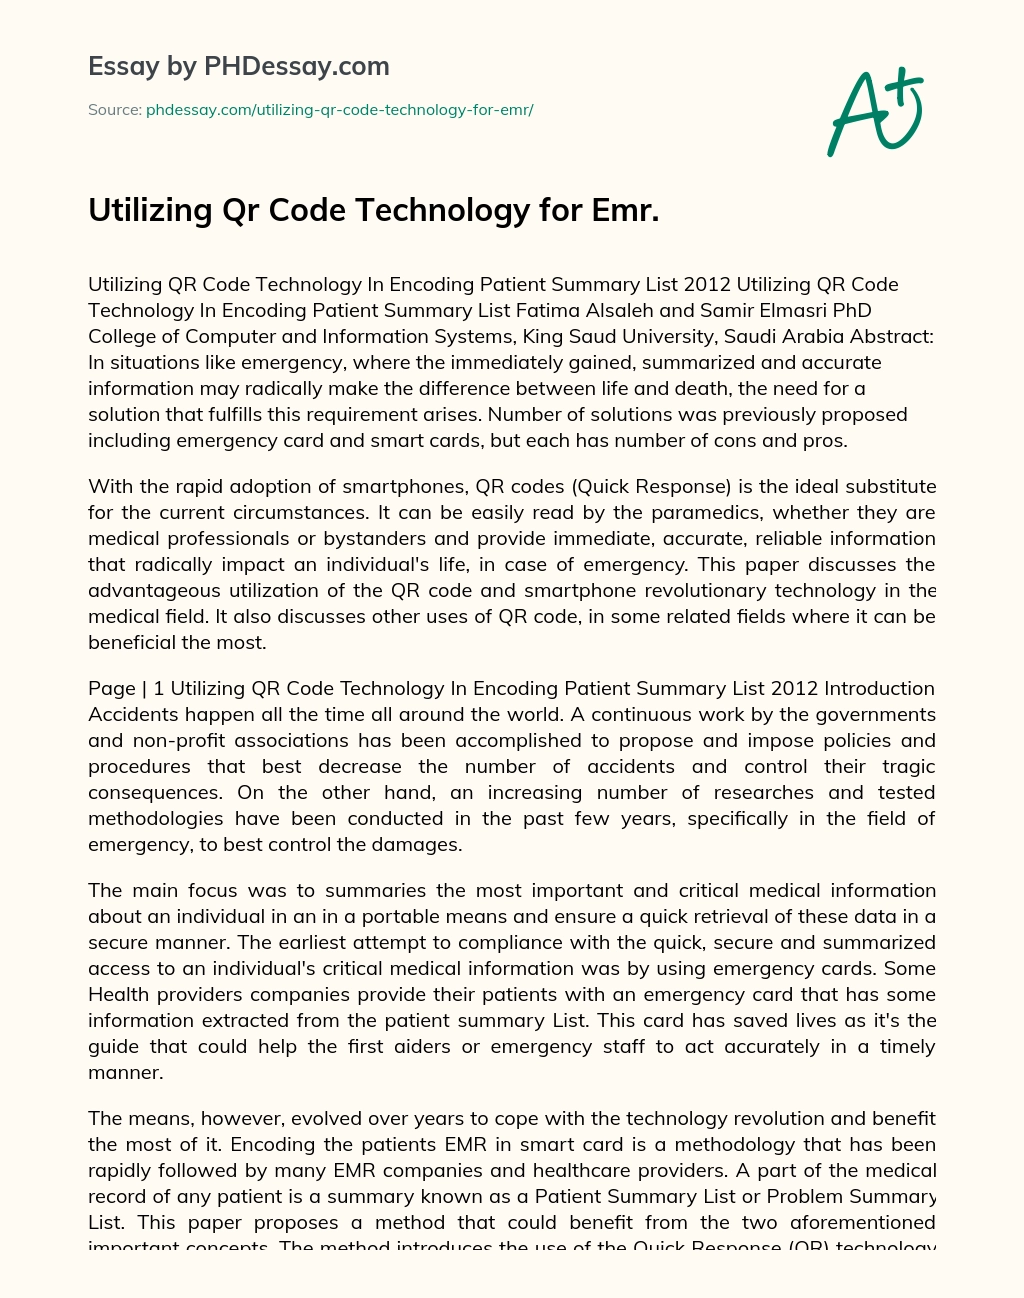 Utilizing Qr Code Technology for Emr. essay